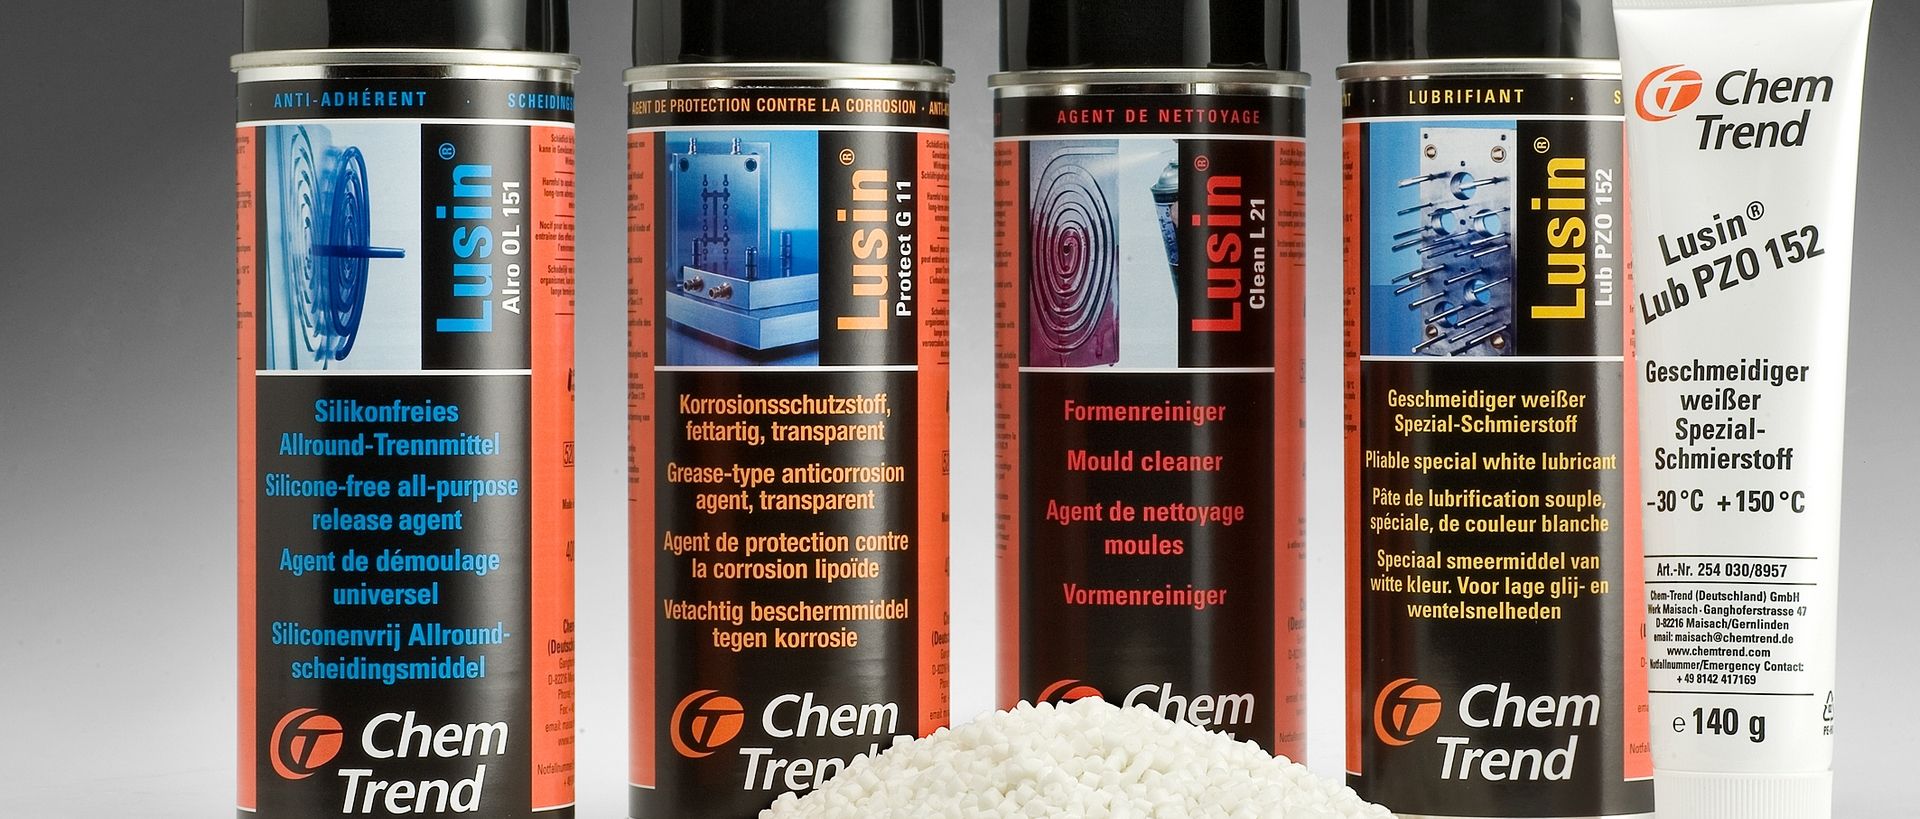 Chem-Trend 88-H Aerosol Release Agent脱模剂